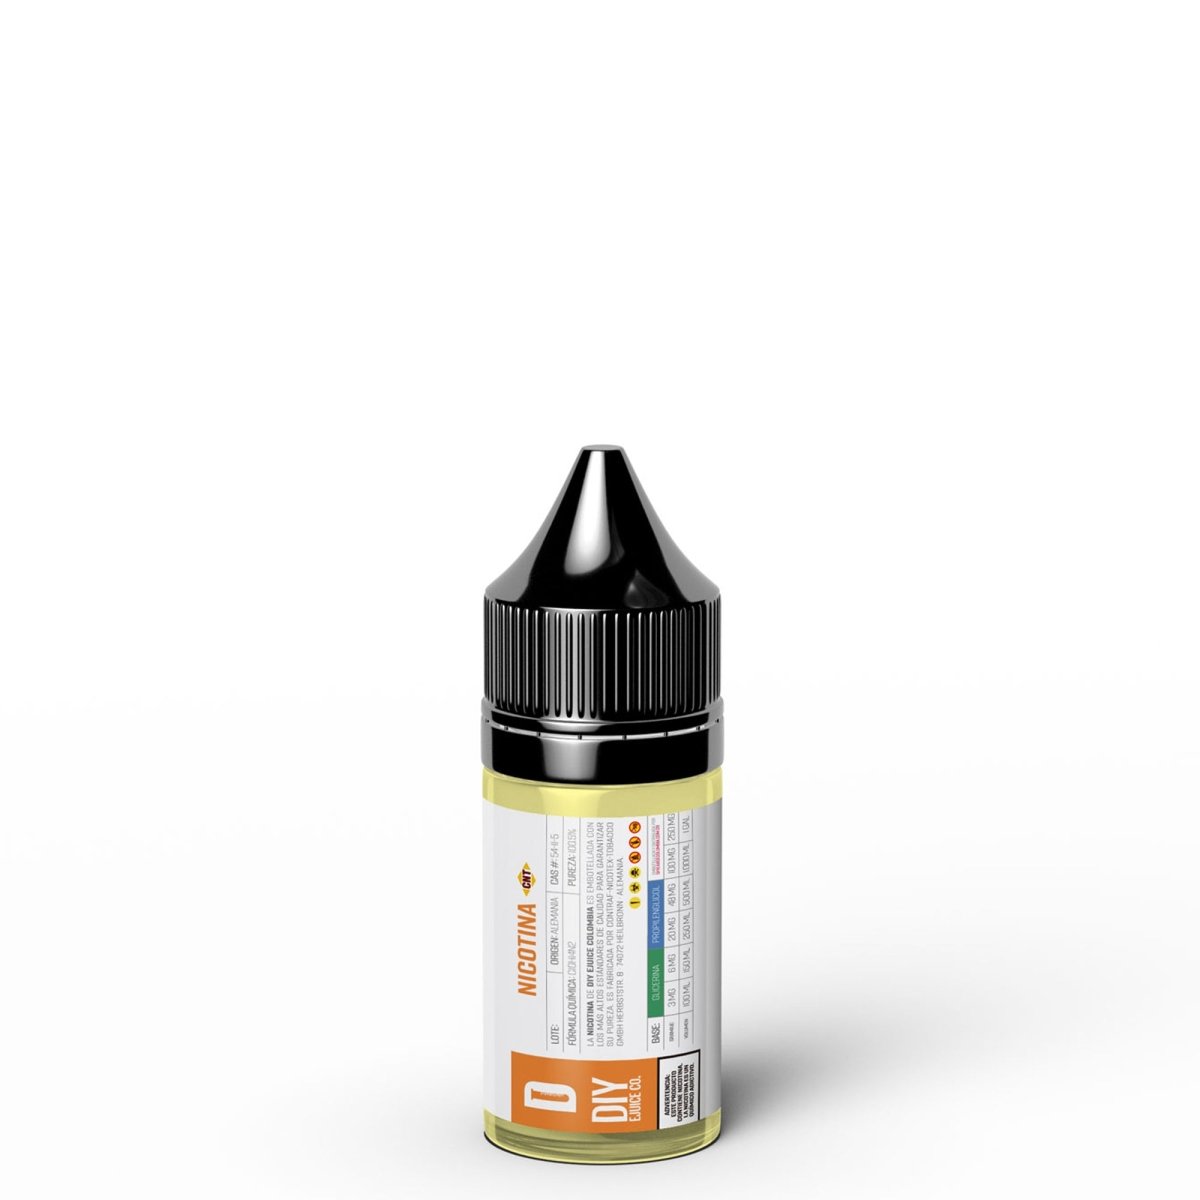 Nicotina CNT® - 100mg/ml PG - Nicotina de CNT en DIY Vape.